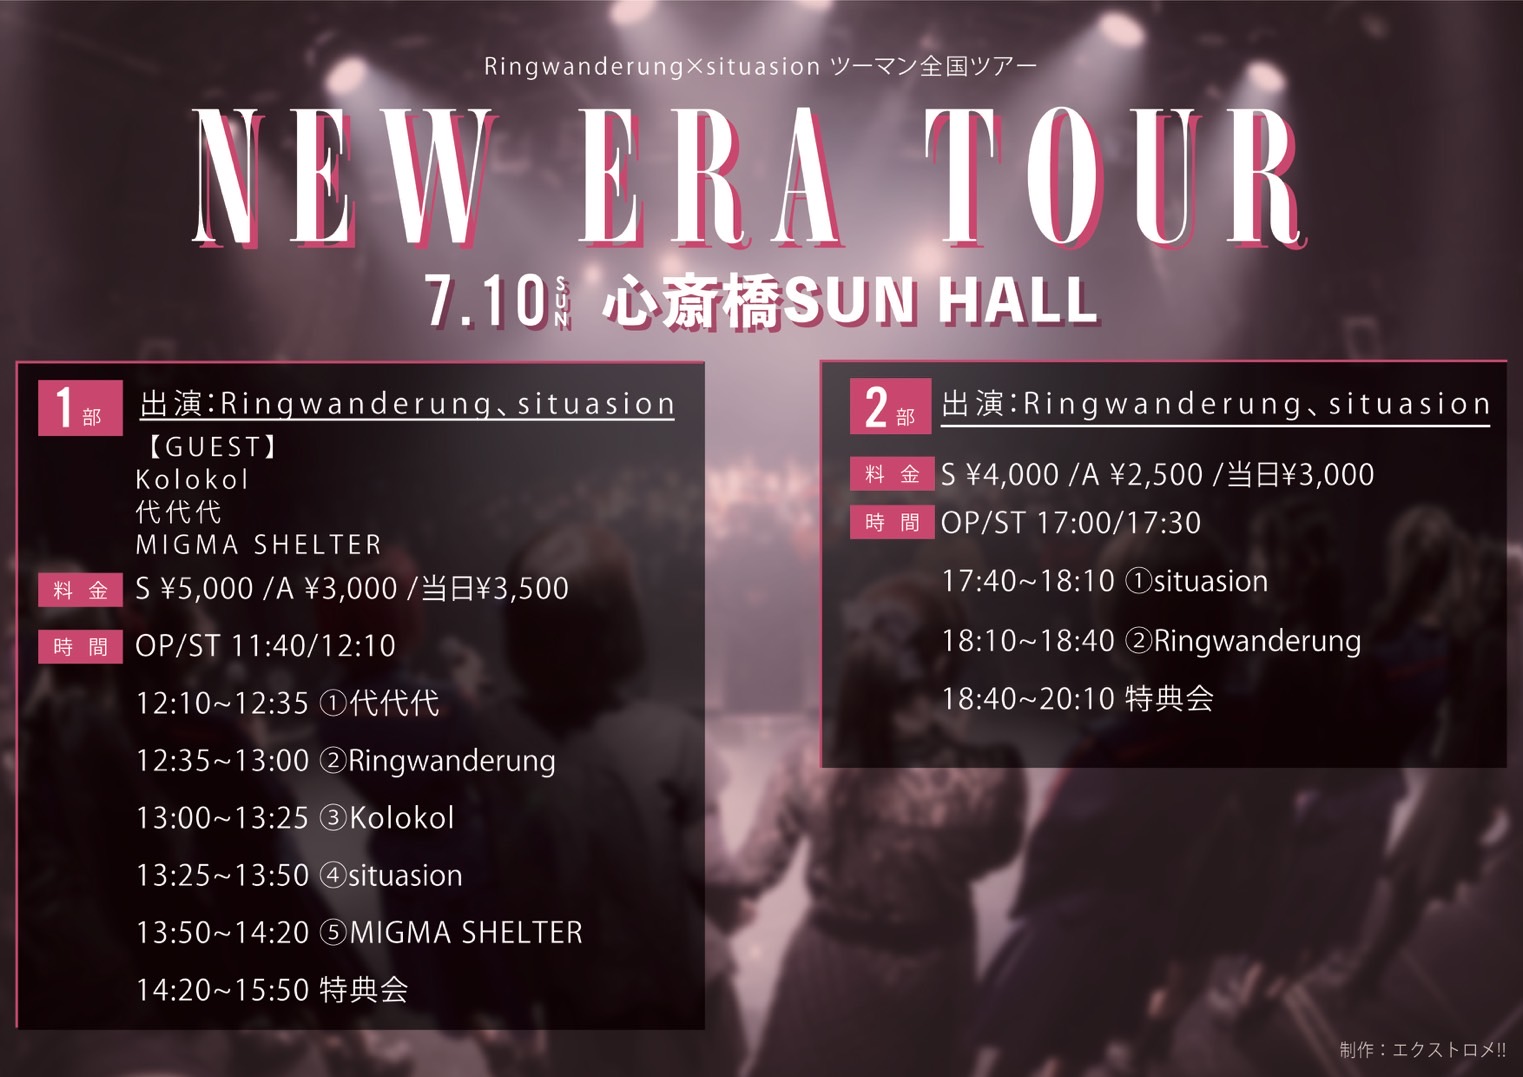 NEW ERA TOUR 2部